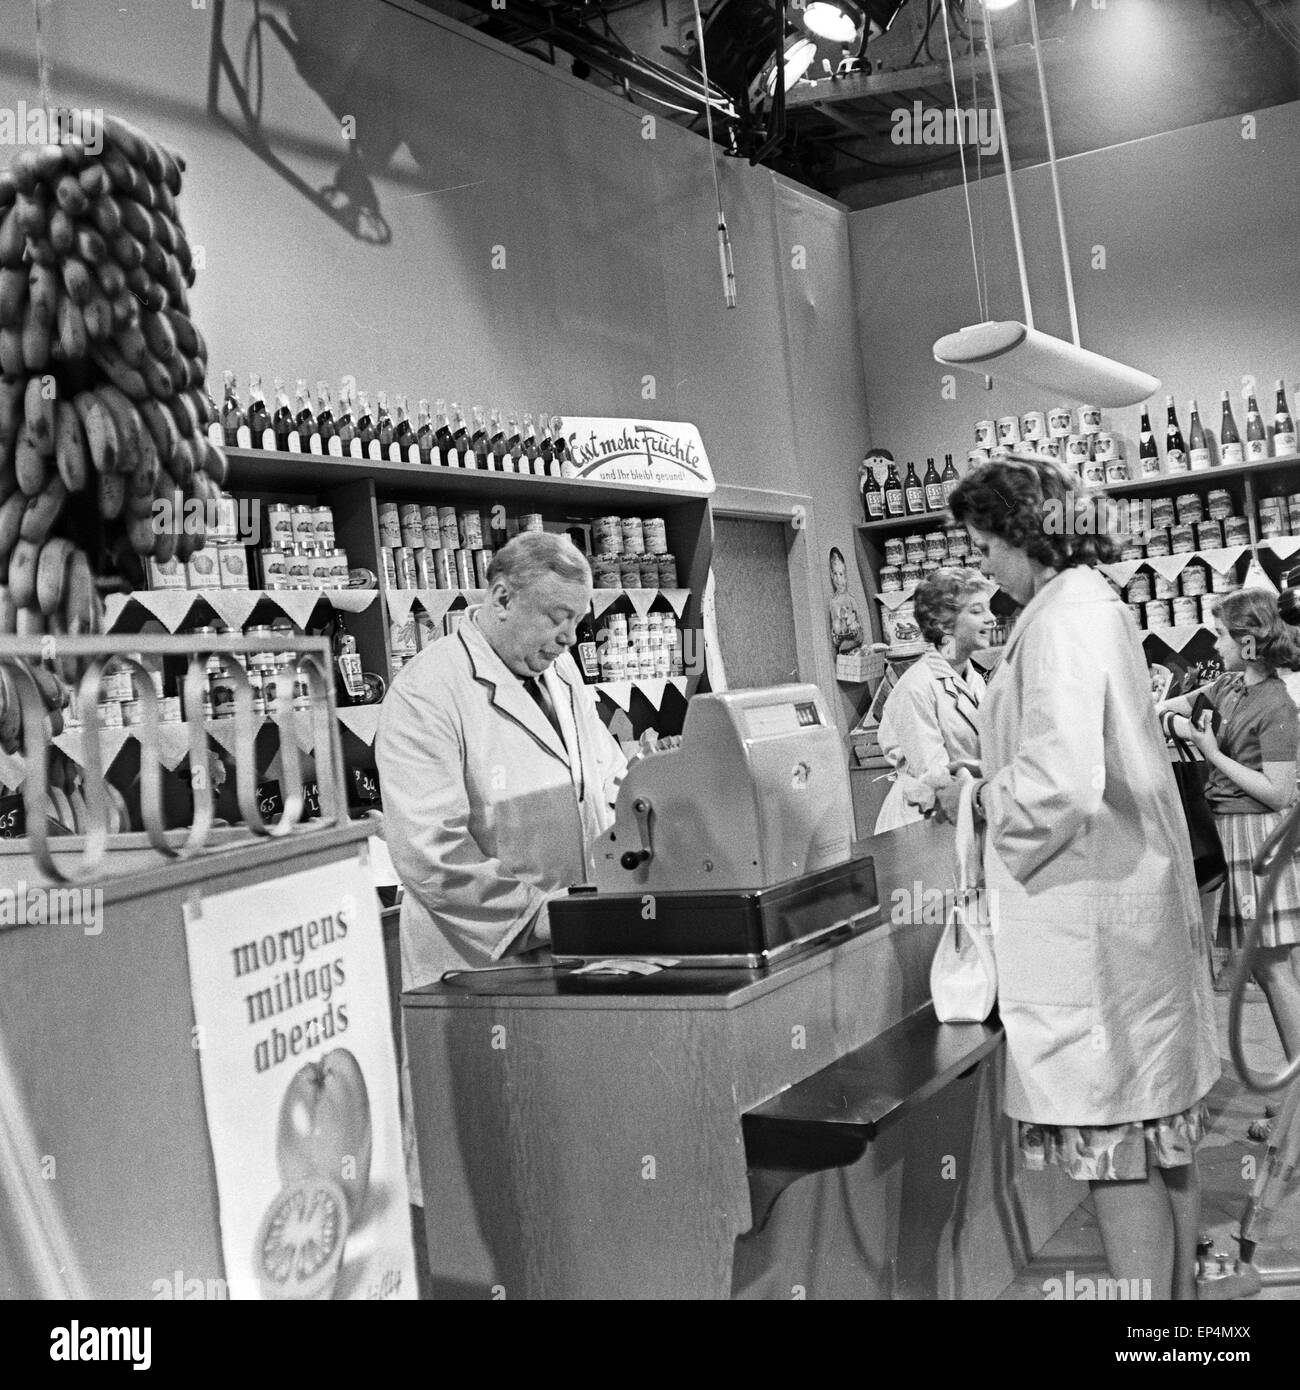 'Épisode' Fernsehserie Gemüseladen aus der "Oben und unten', Deutschland 1960 - 1961, Regie : Siegfried Wagner, Szenenfoto Oswald Banque D'Images